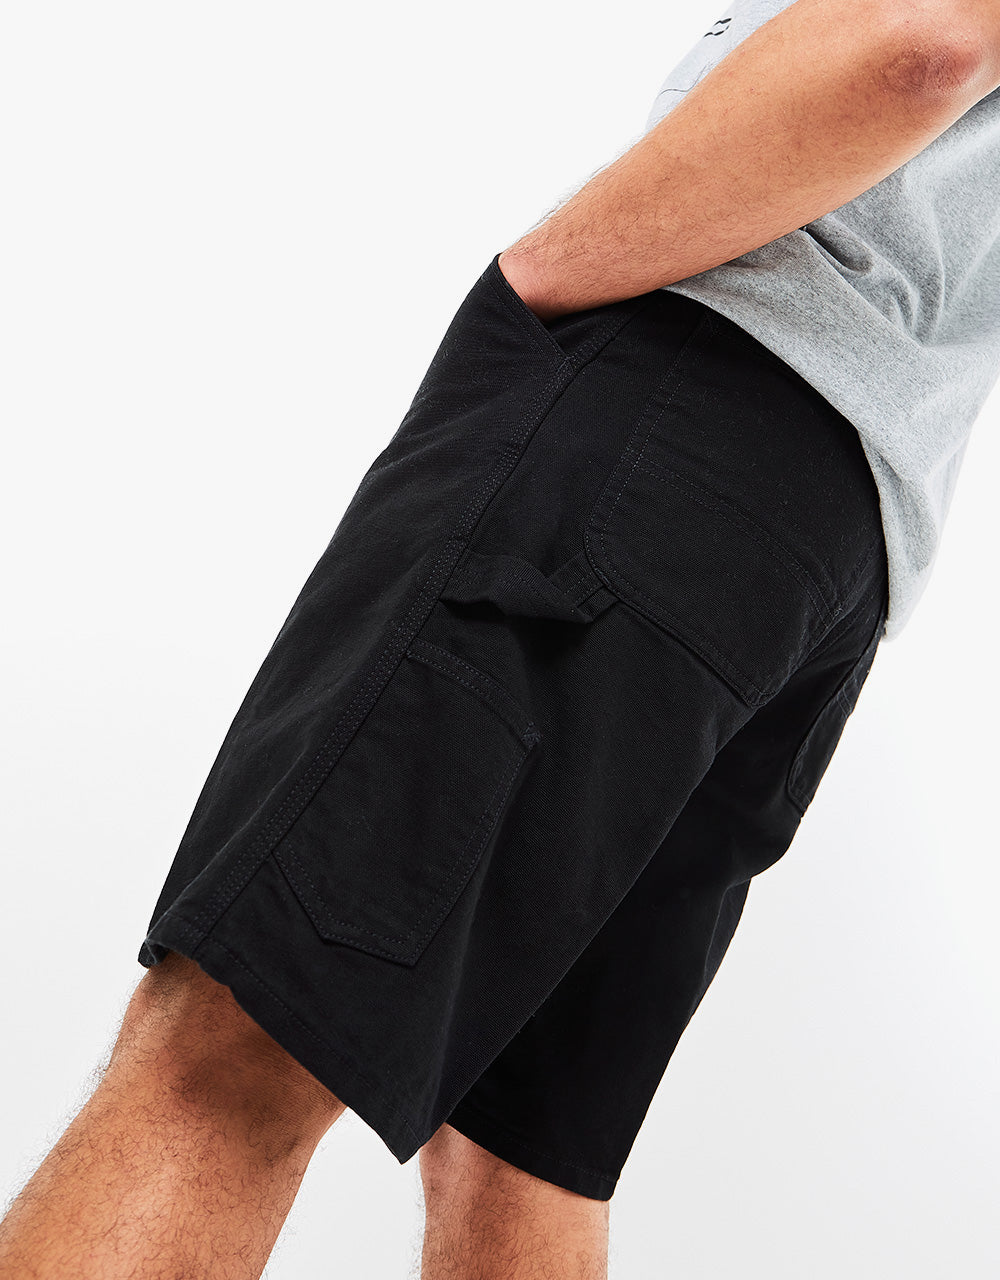 Carhartt WIP Single Knee Short - Black (Rinsed)